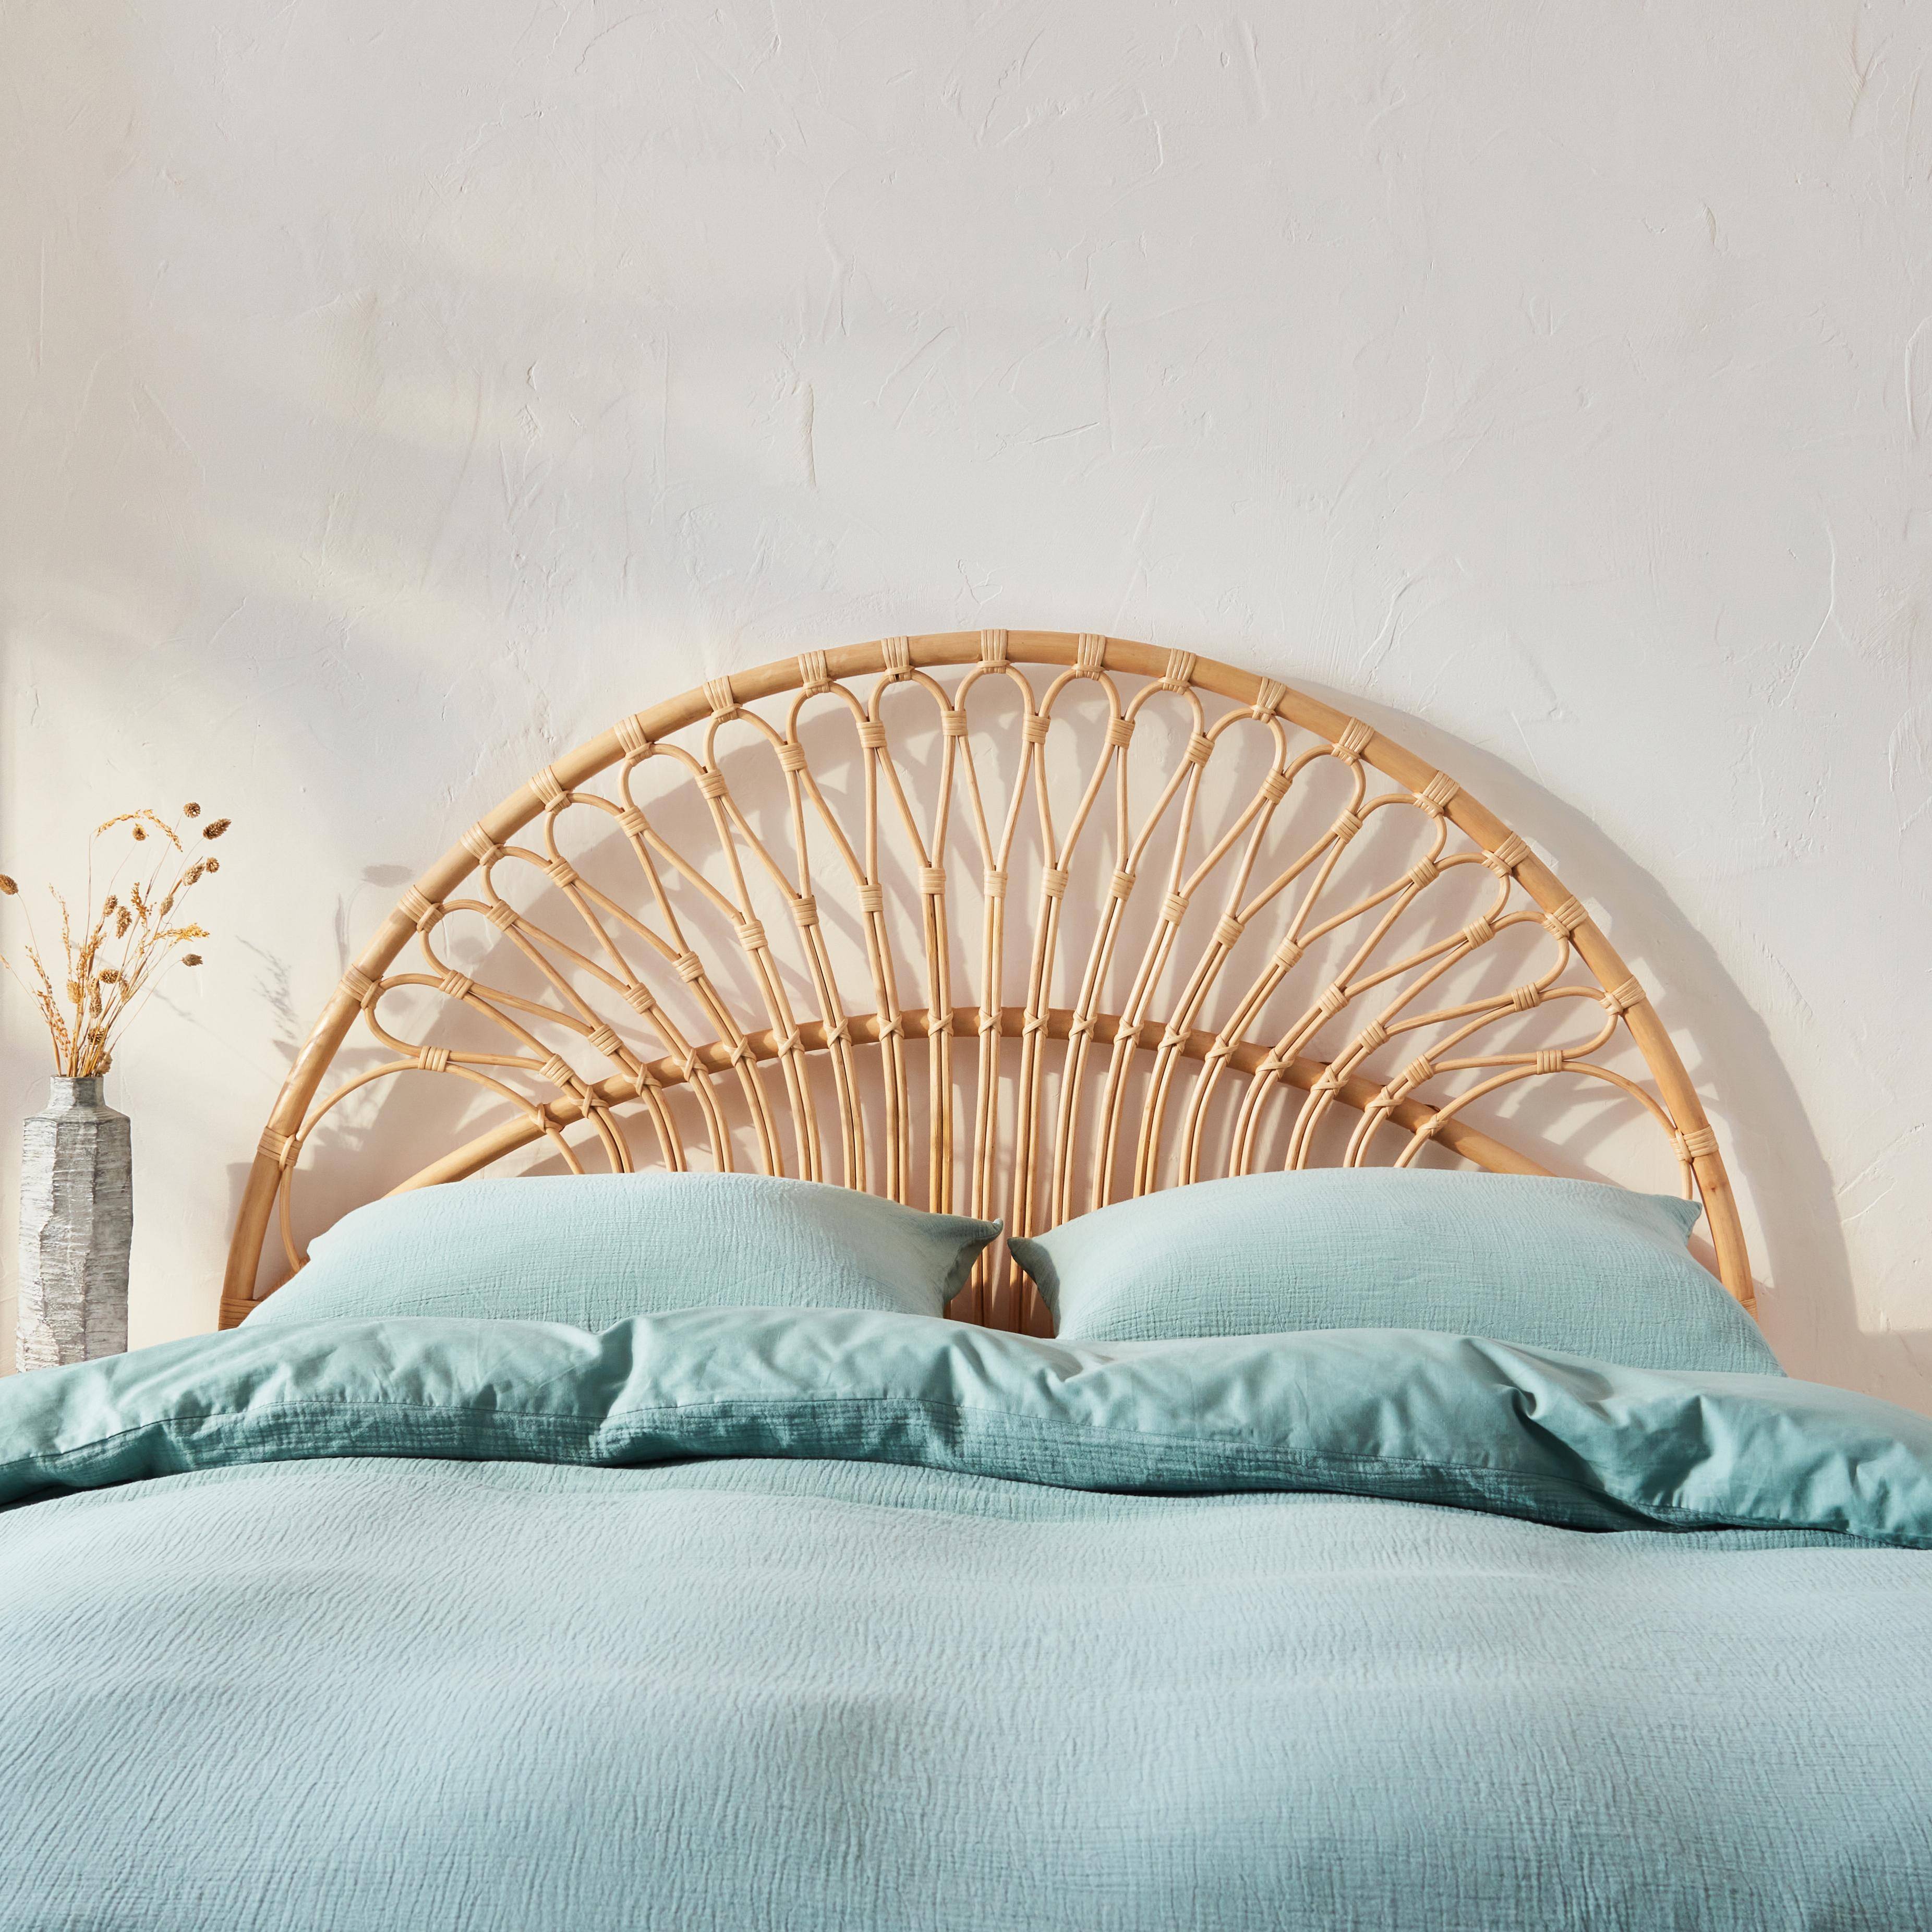 Kopfteil aus Rattan Natur passend für Betten mit einer Breite von 140 cm, L 140 x T 3 x H 115 cm,sweeek,Photo2